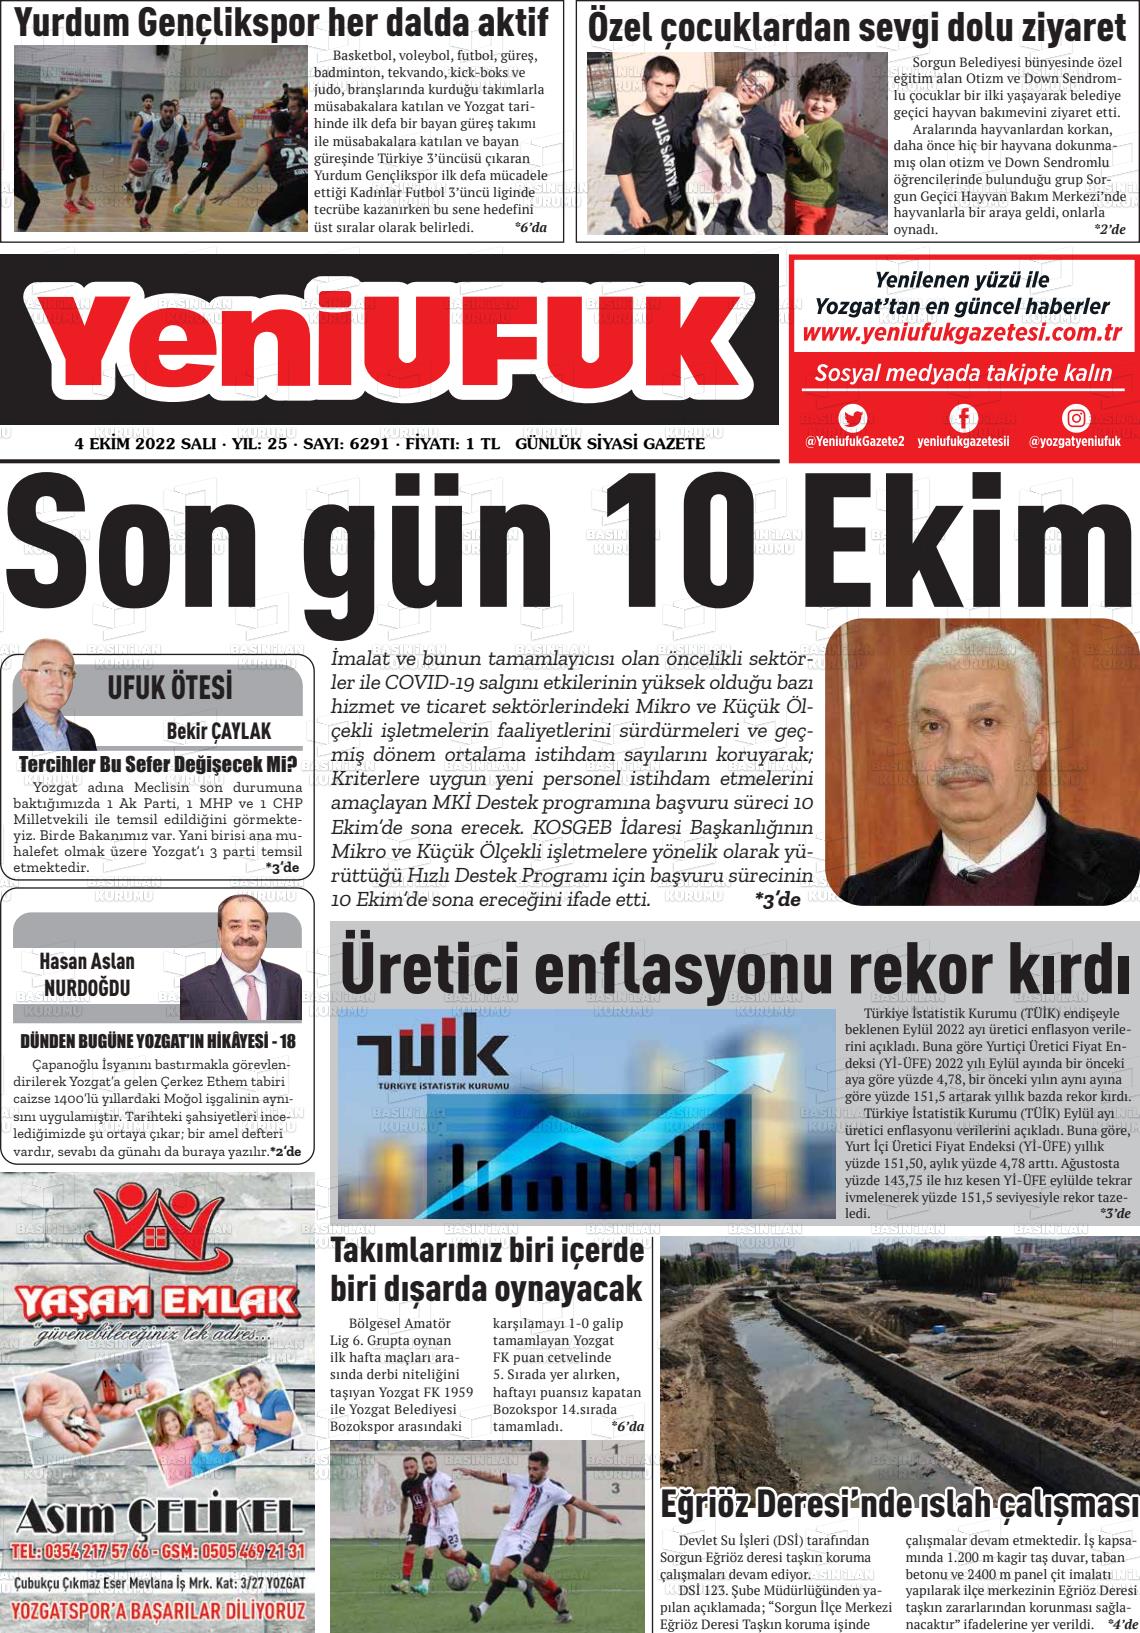 04 Ekim 2022 Yozgat Yeni Ufuk Gazete Manşeti